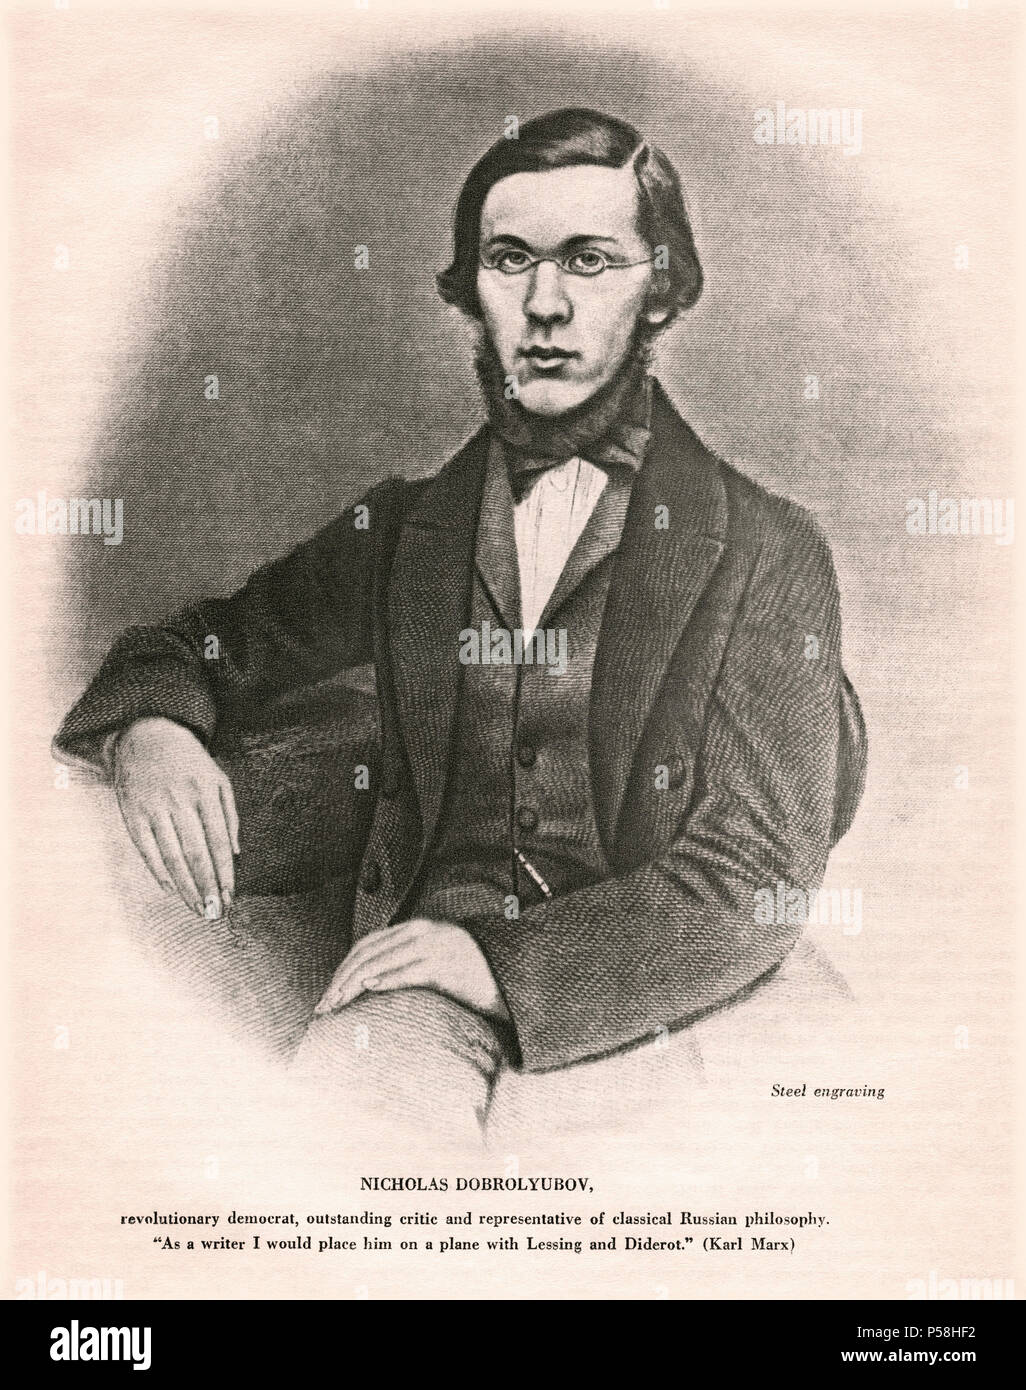 Nikolay Dobrolyubov (1836-61), russische Literaturkritiker, Publizist und Dichter, sitzt, Porträt, Stahlstich Stockfoto